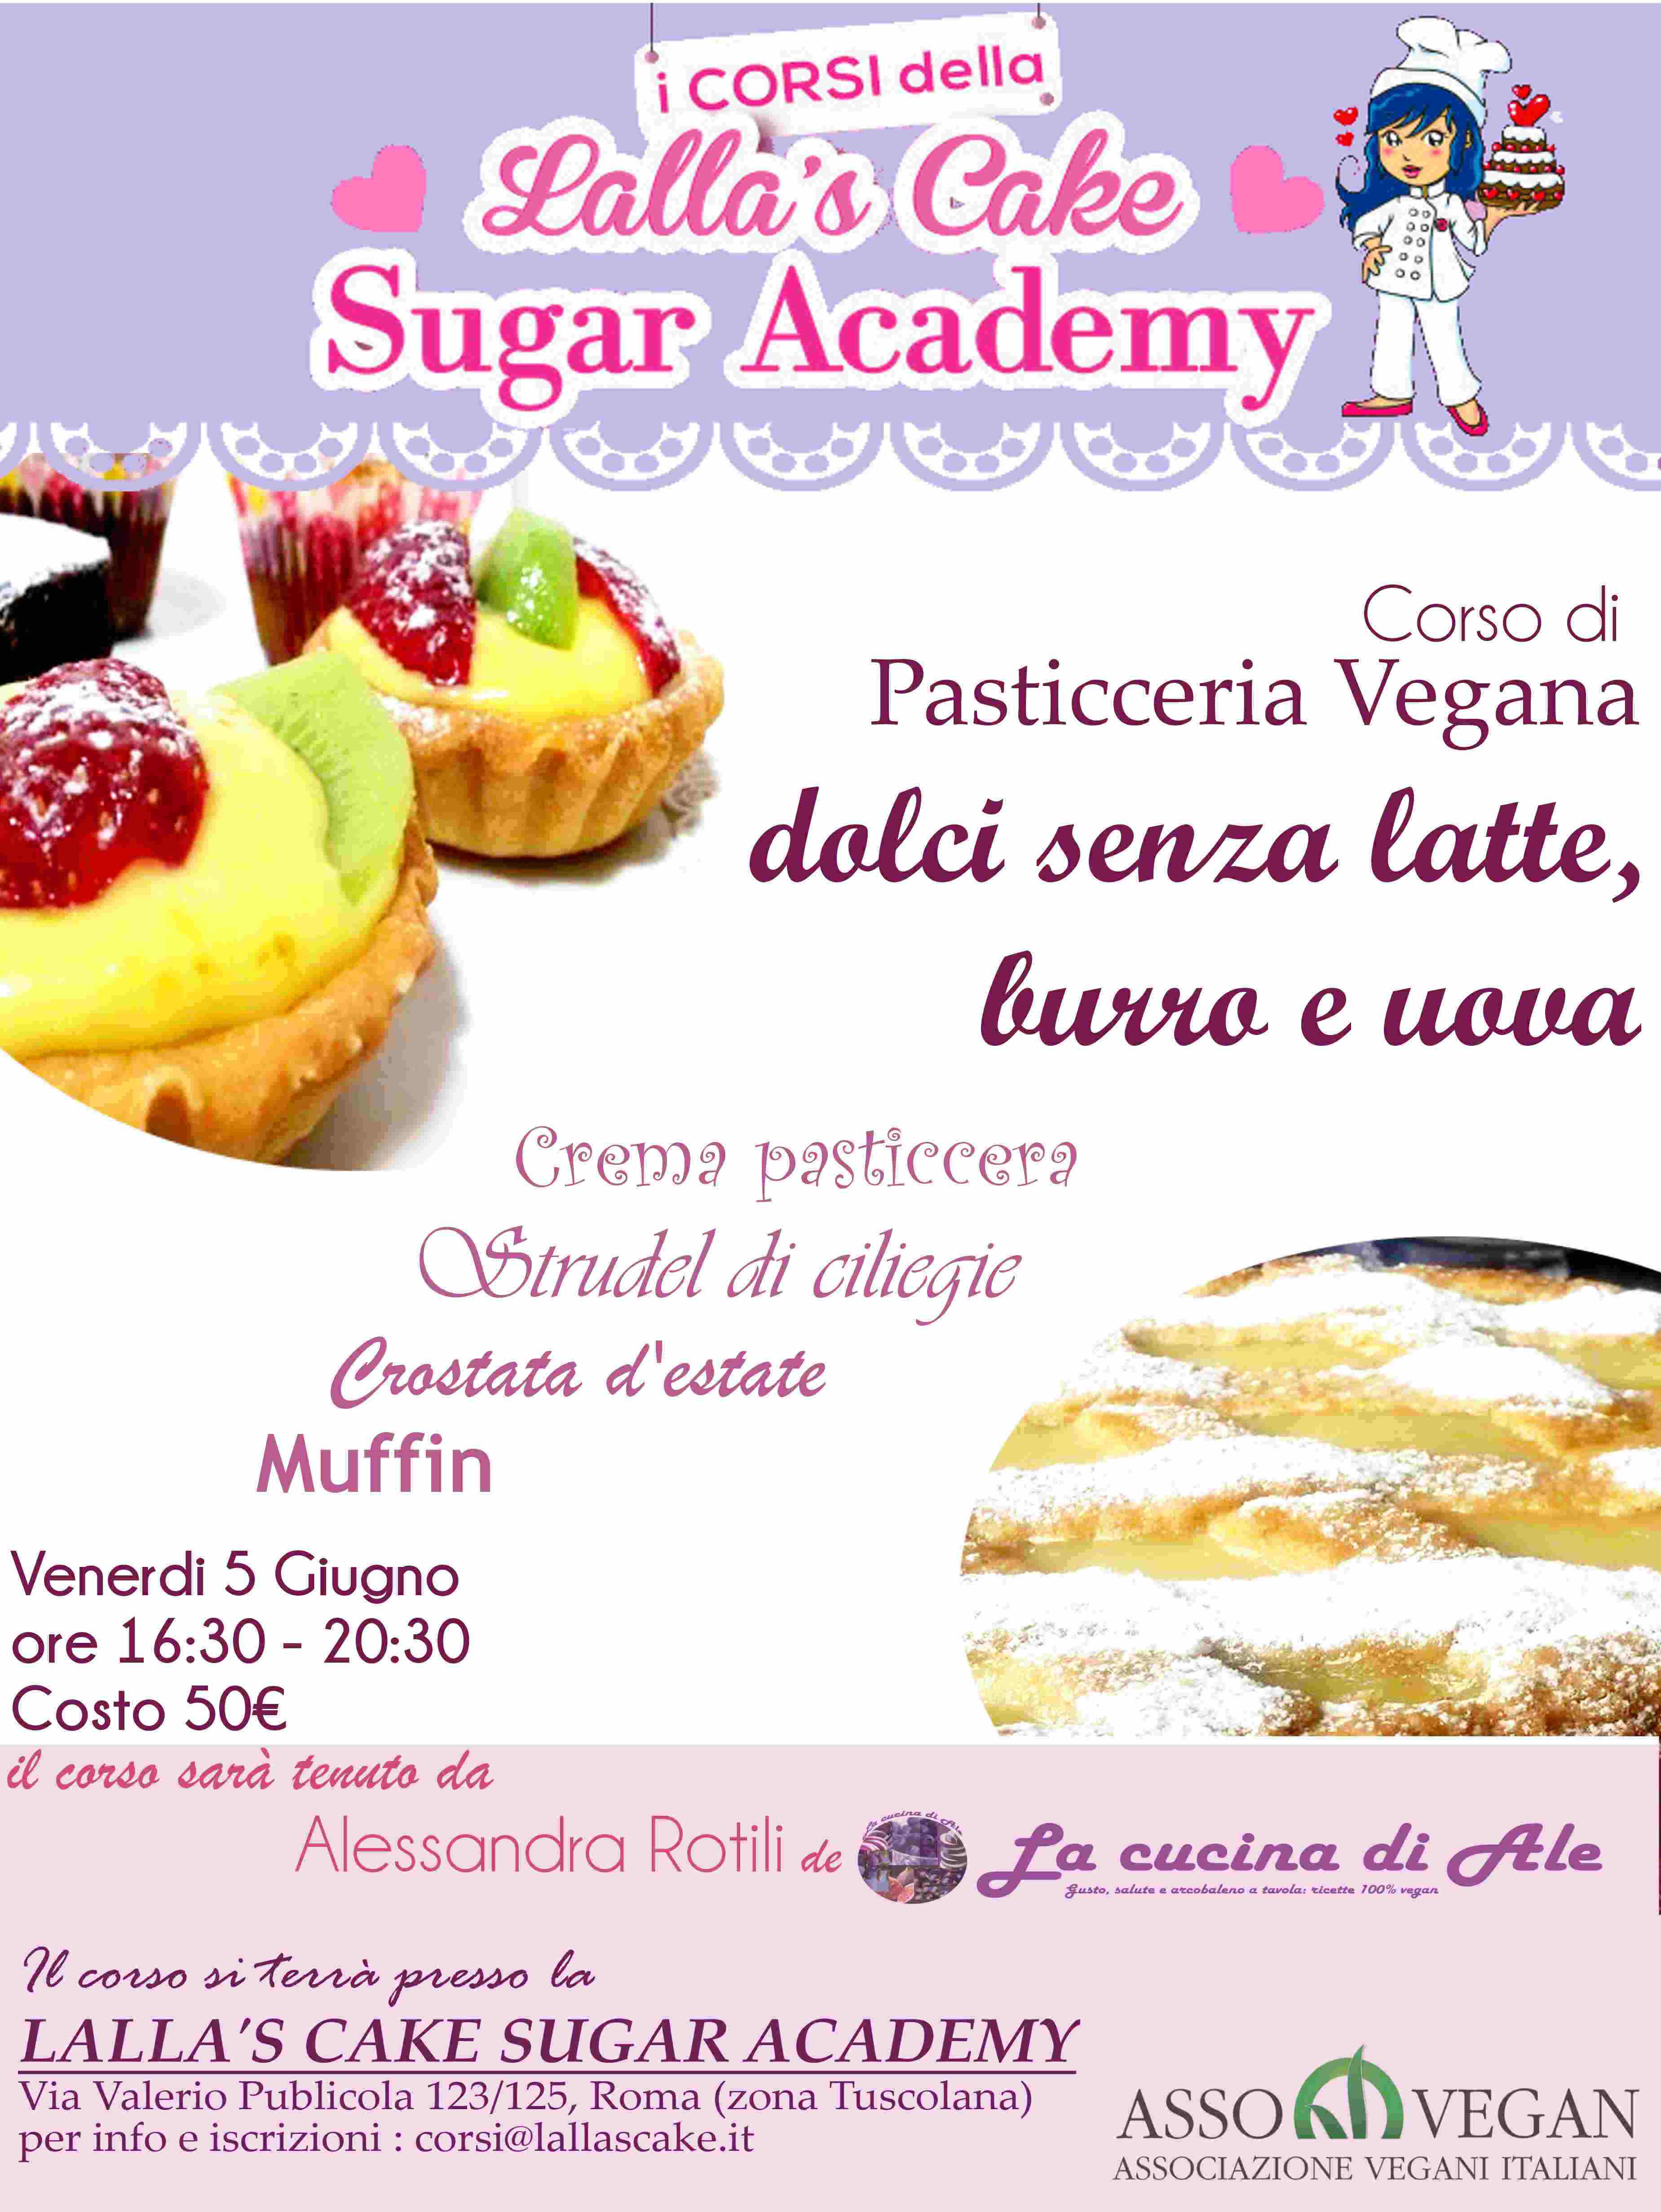 Corso di dolci alla Lalla's cake sugar academy